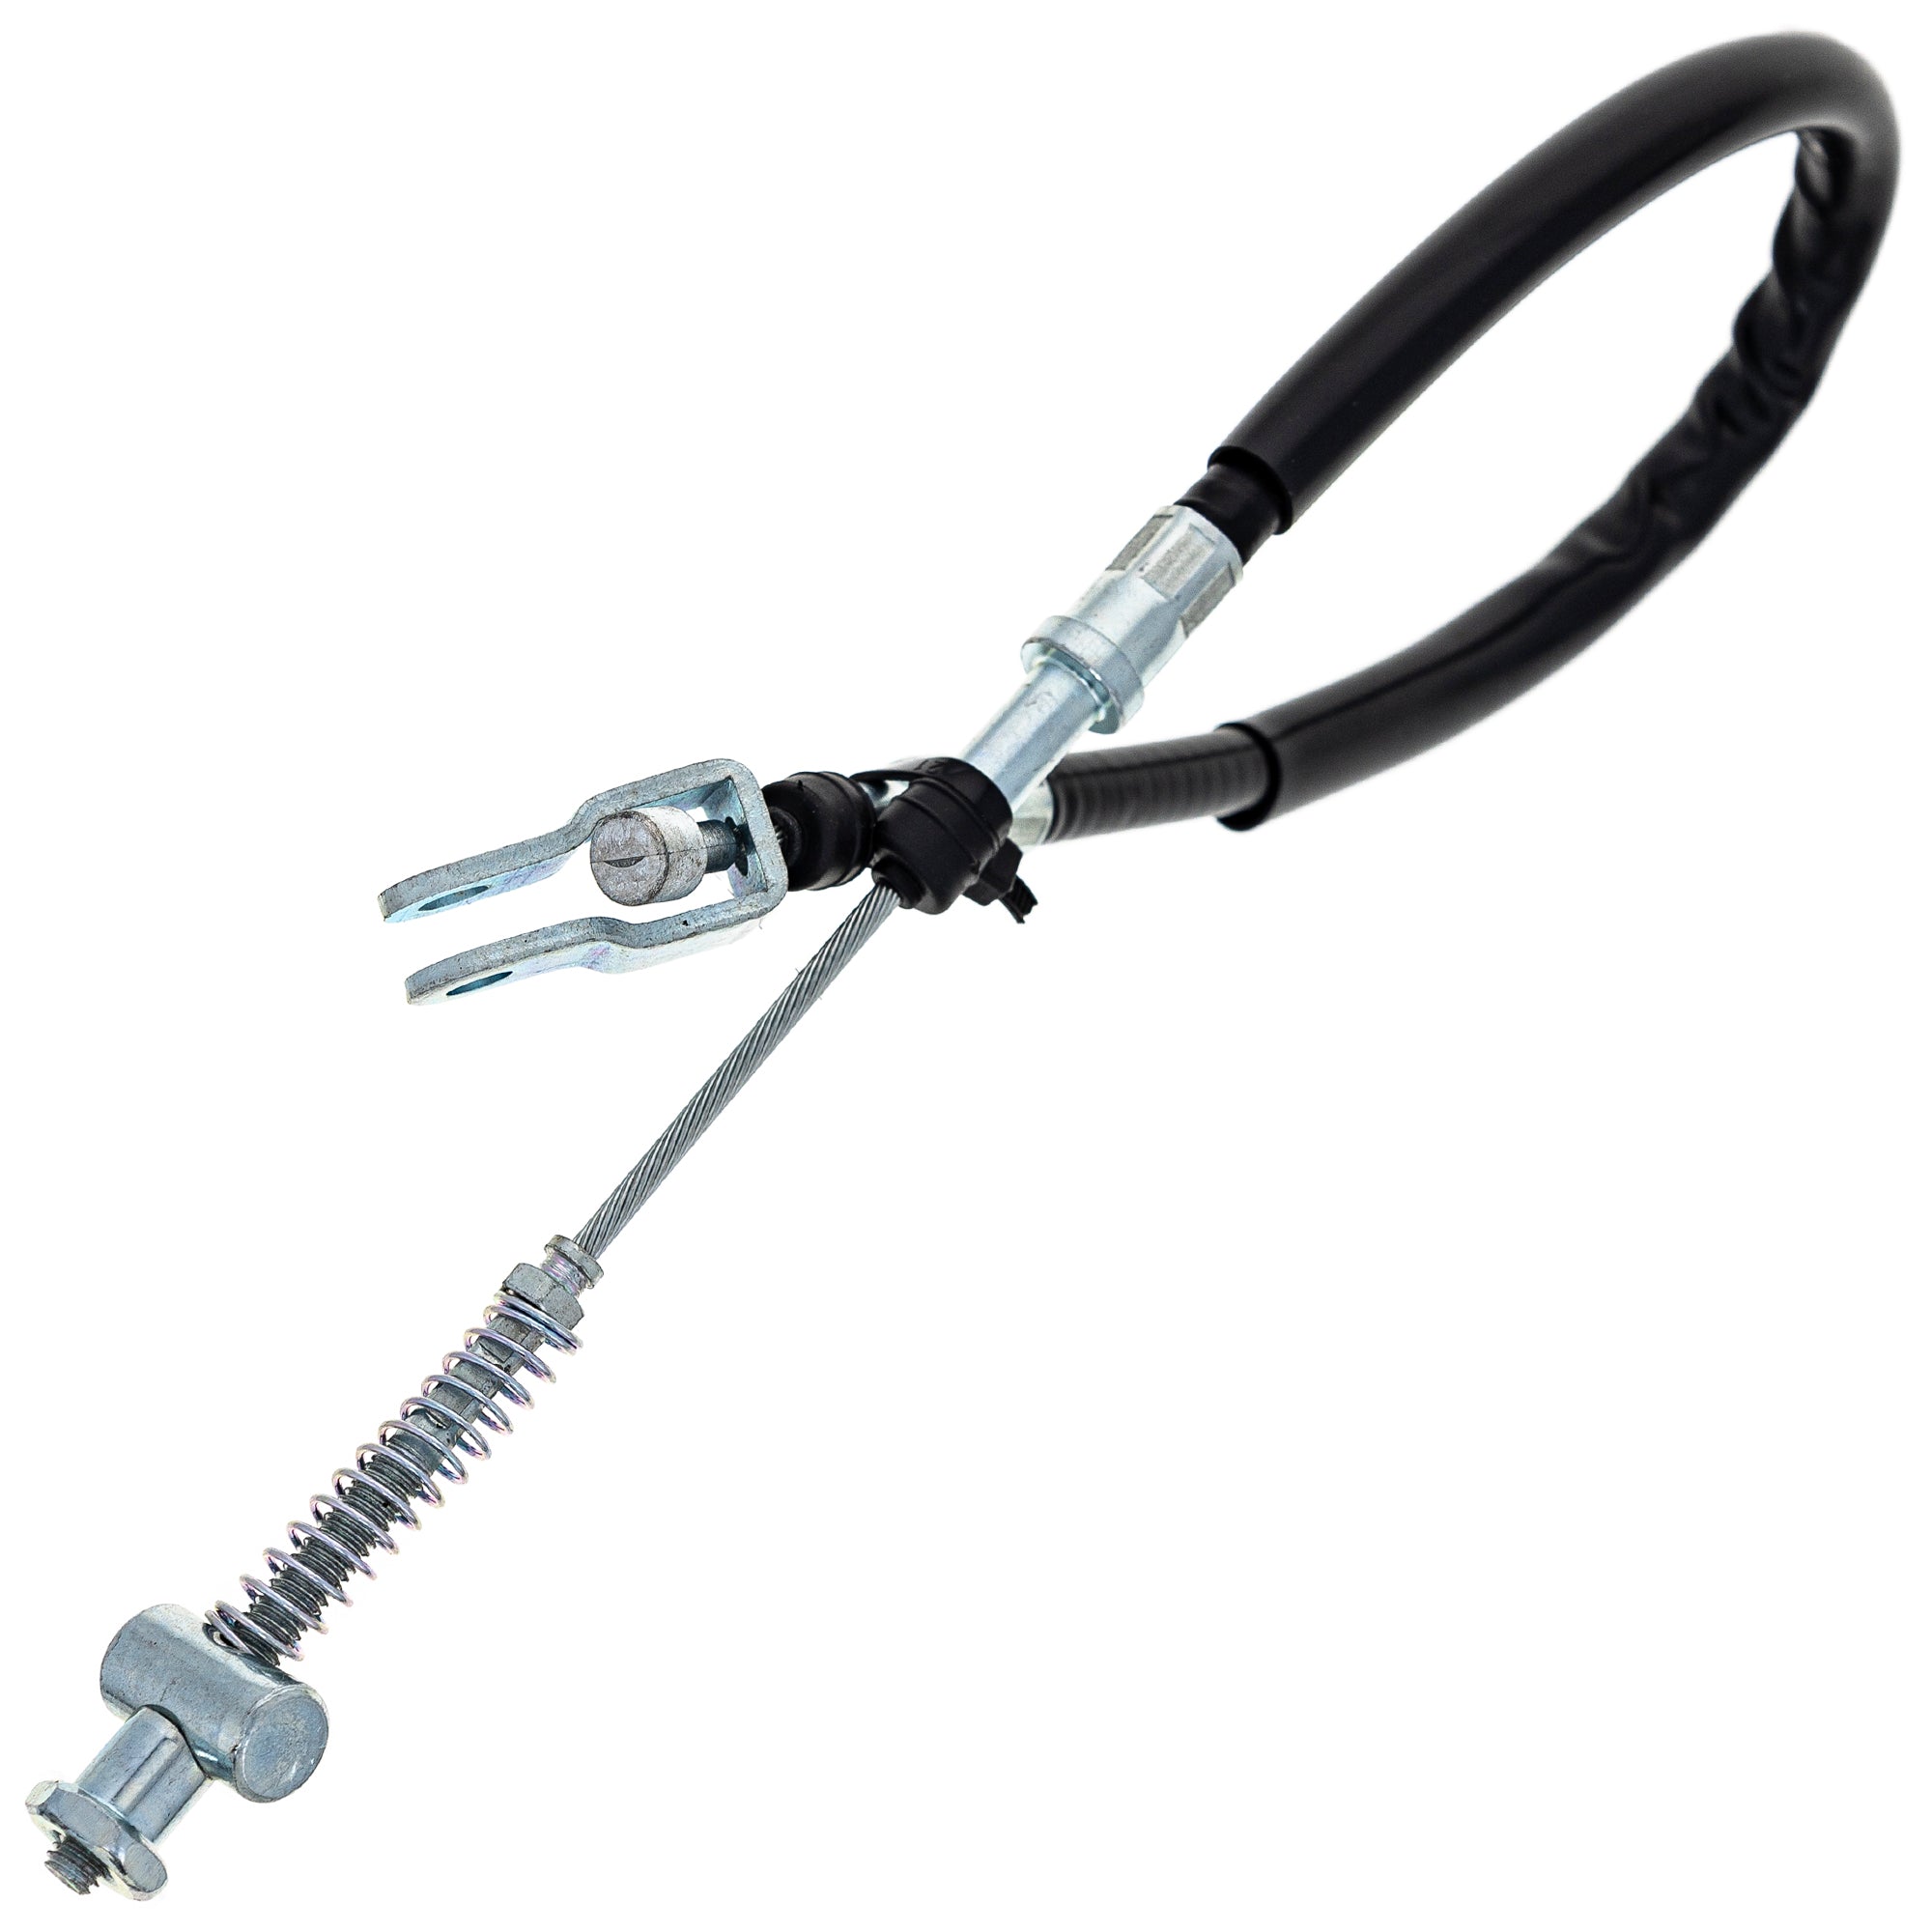 Rear Foot Brake Cable for Kawasaki Bayou 220 250 54005-1140 54005-1154